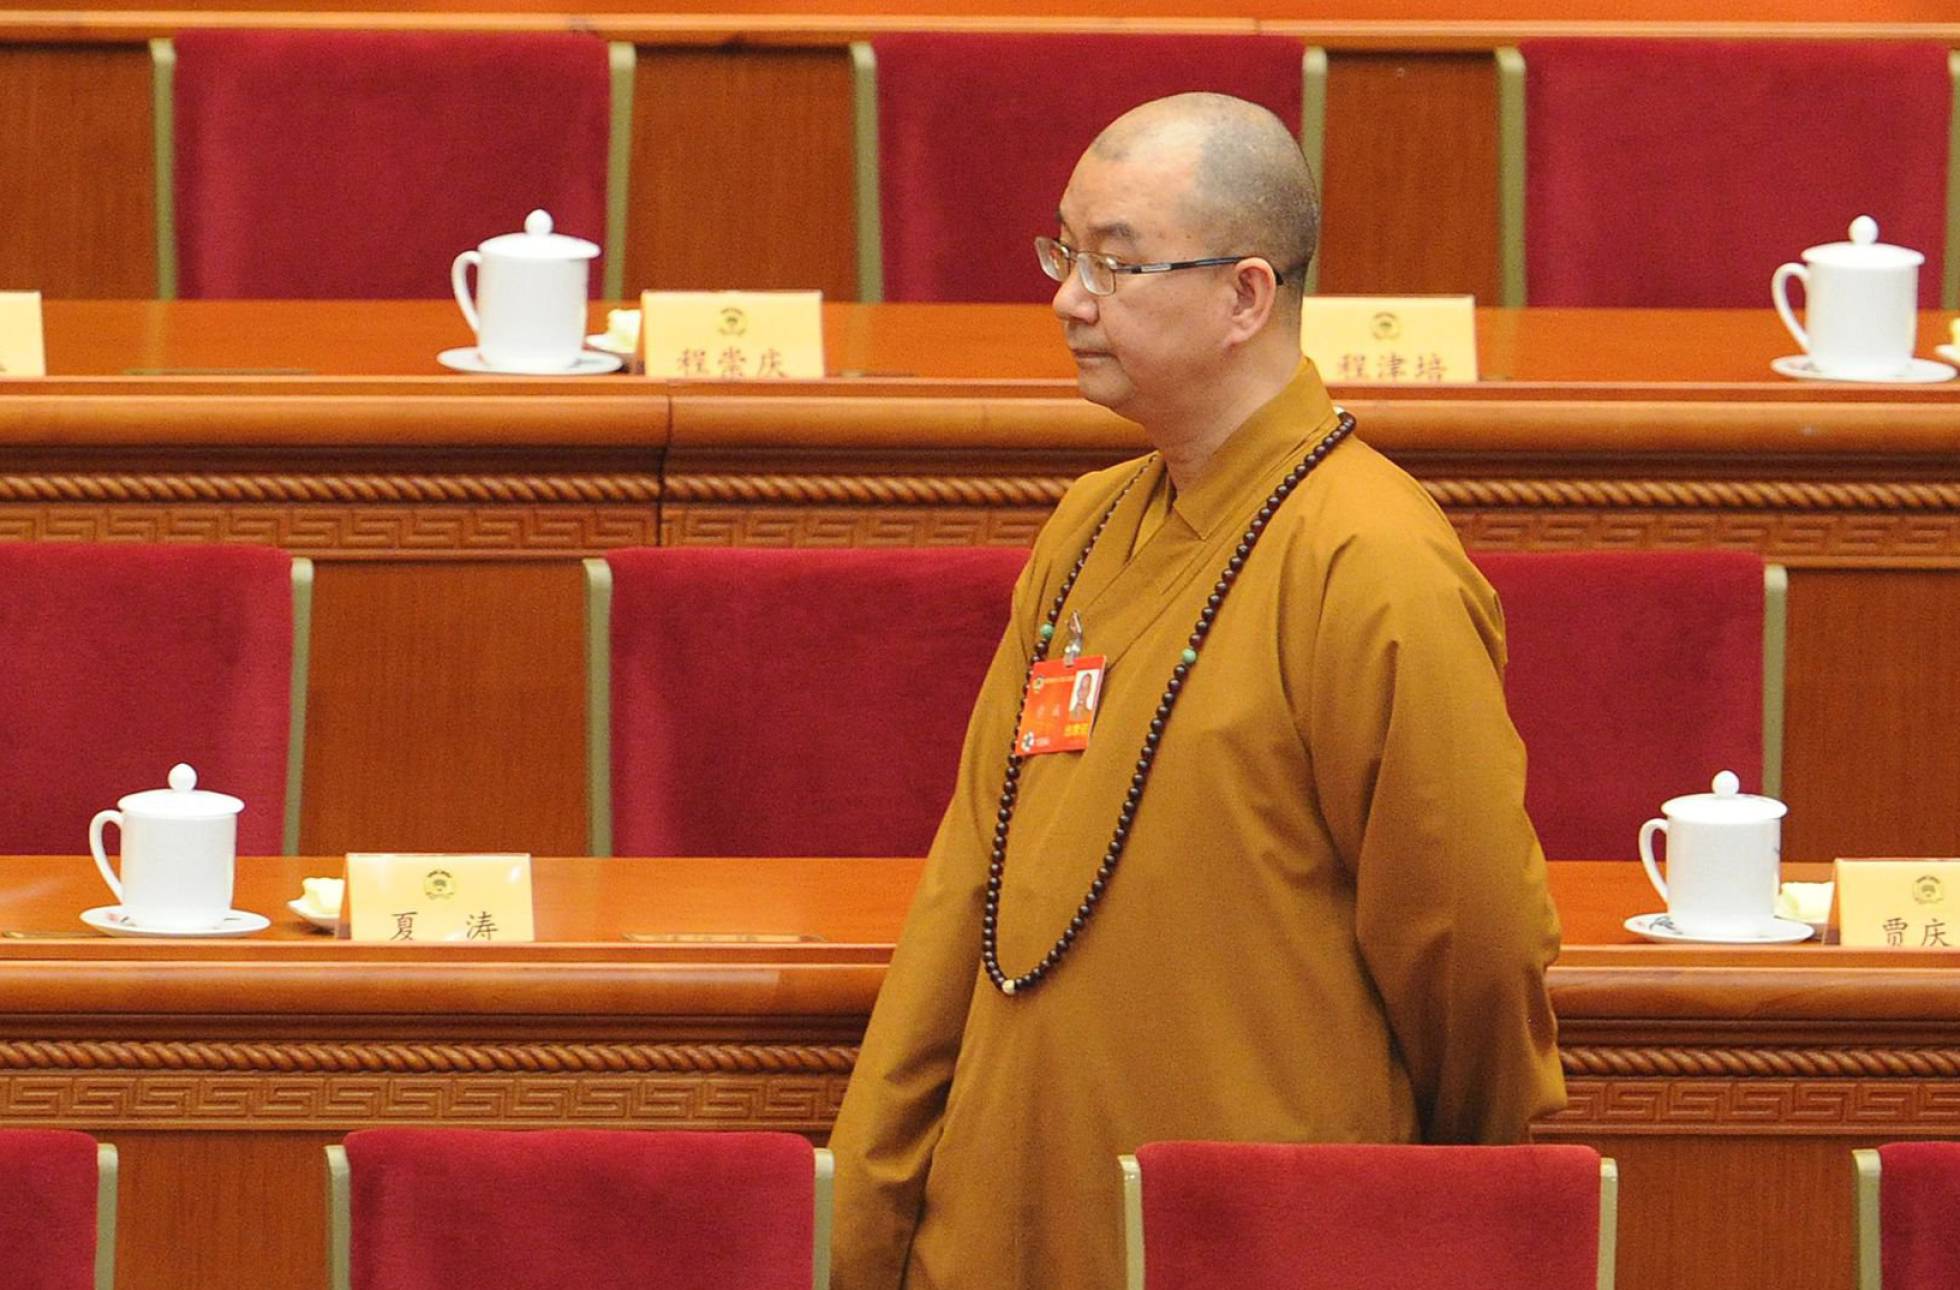 Acusan de abuso sexual a reconocido monje budista en China